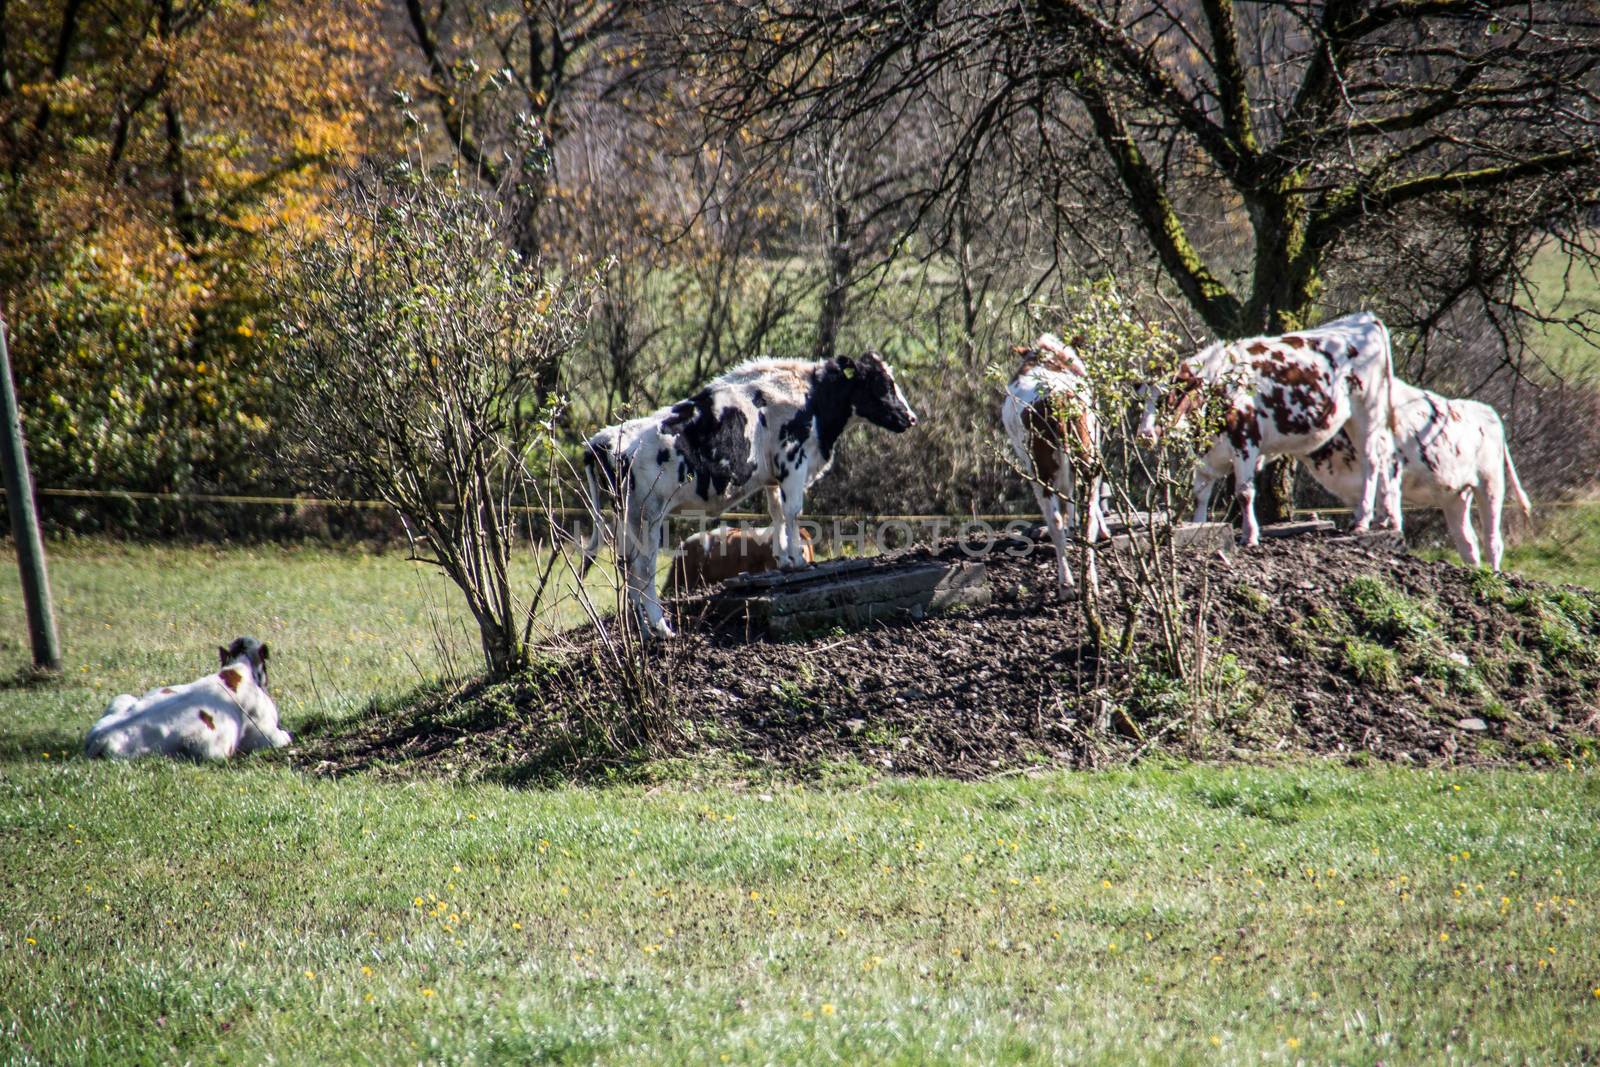 Cows seek shade under tree by Dr-Lange